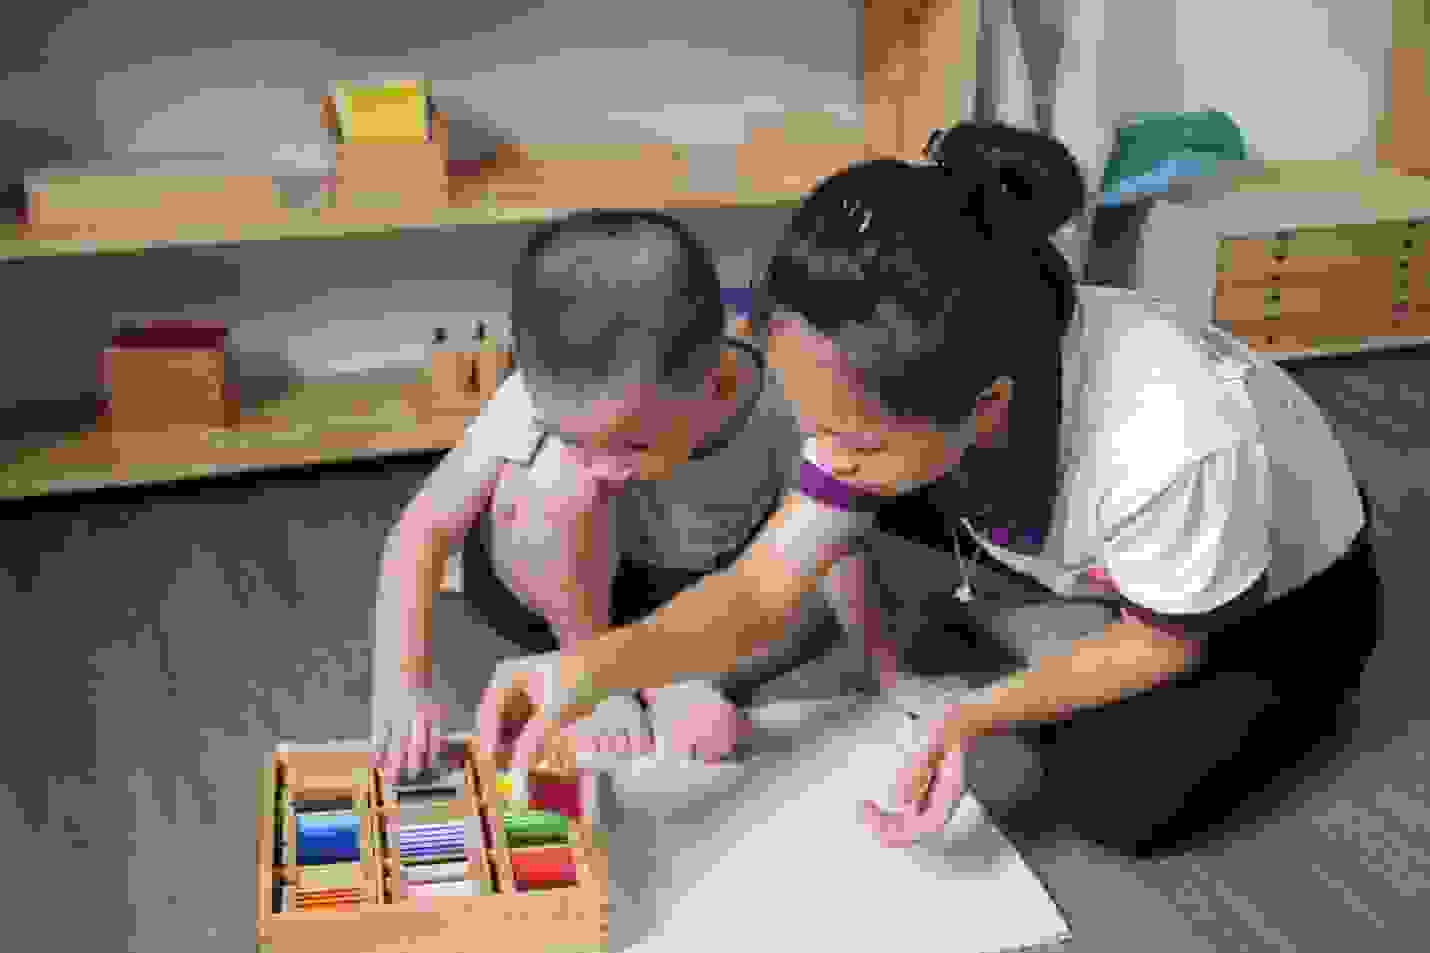 Phương pháp Montessori - giúp trẻ tự lập và chủ động hơn trong cuộc sống